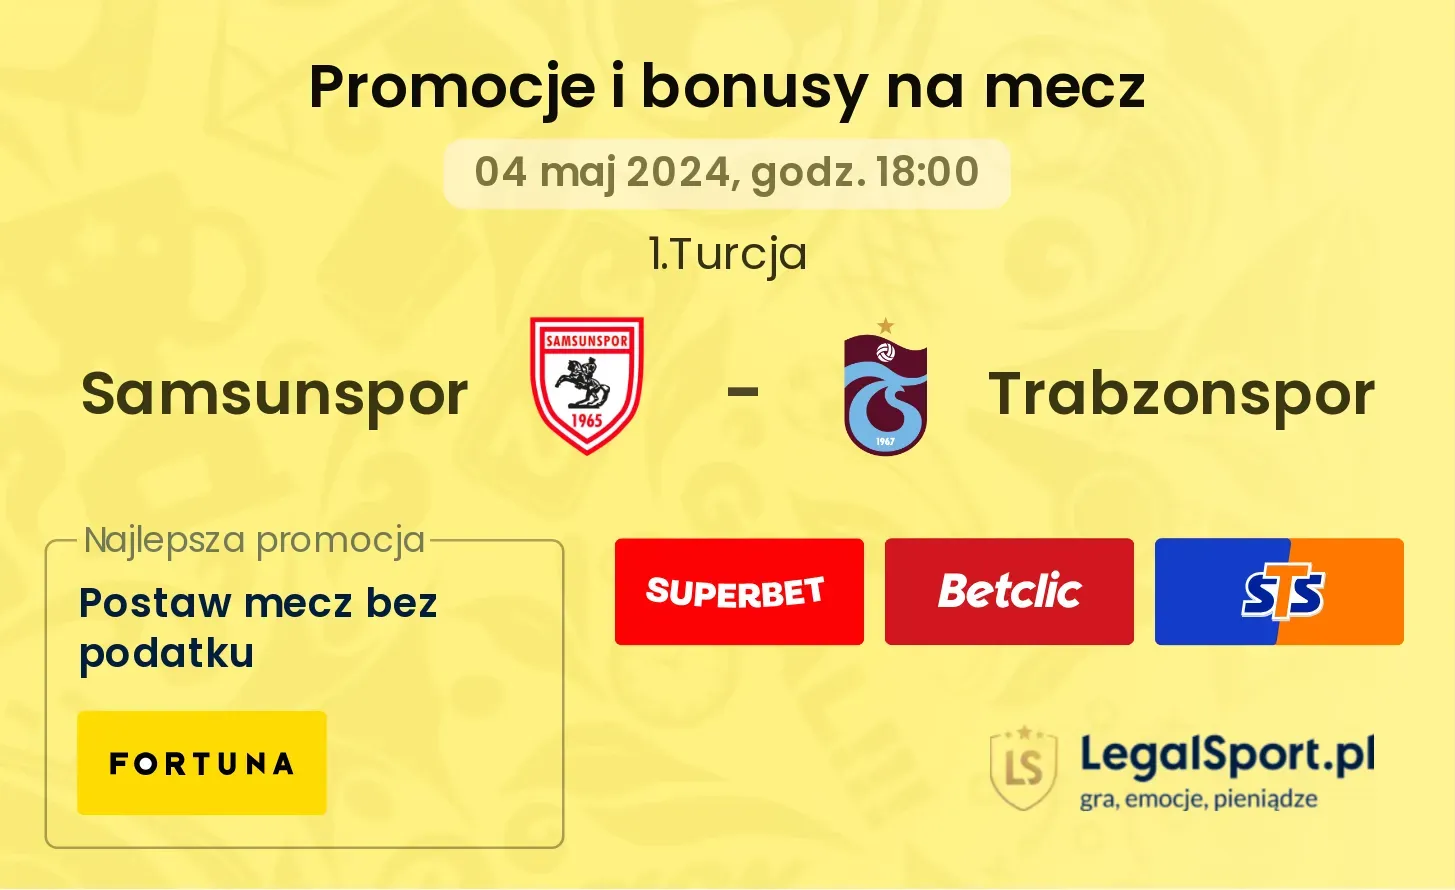 Samsunspor - Trabzonspor promocje bonusy na mecz